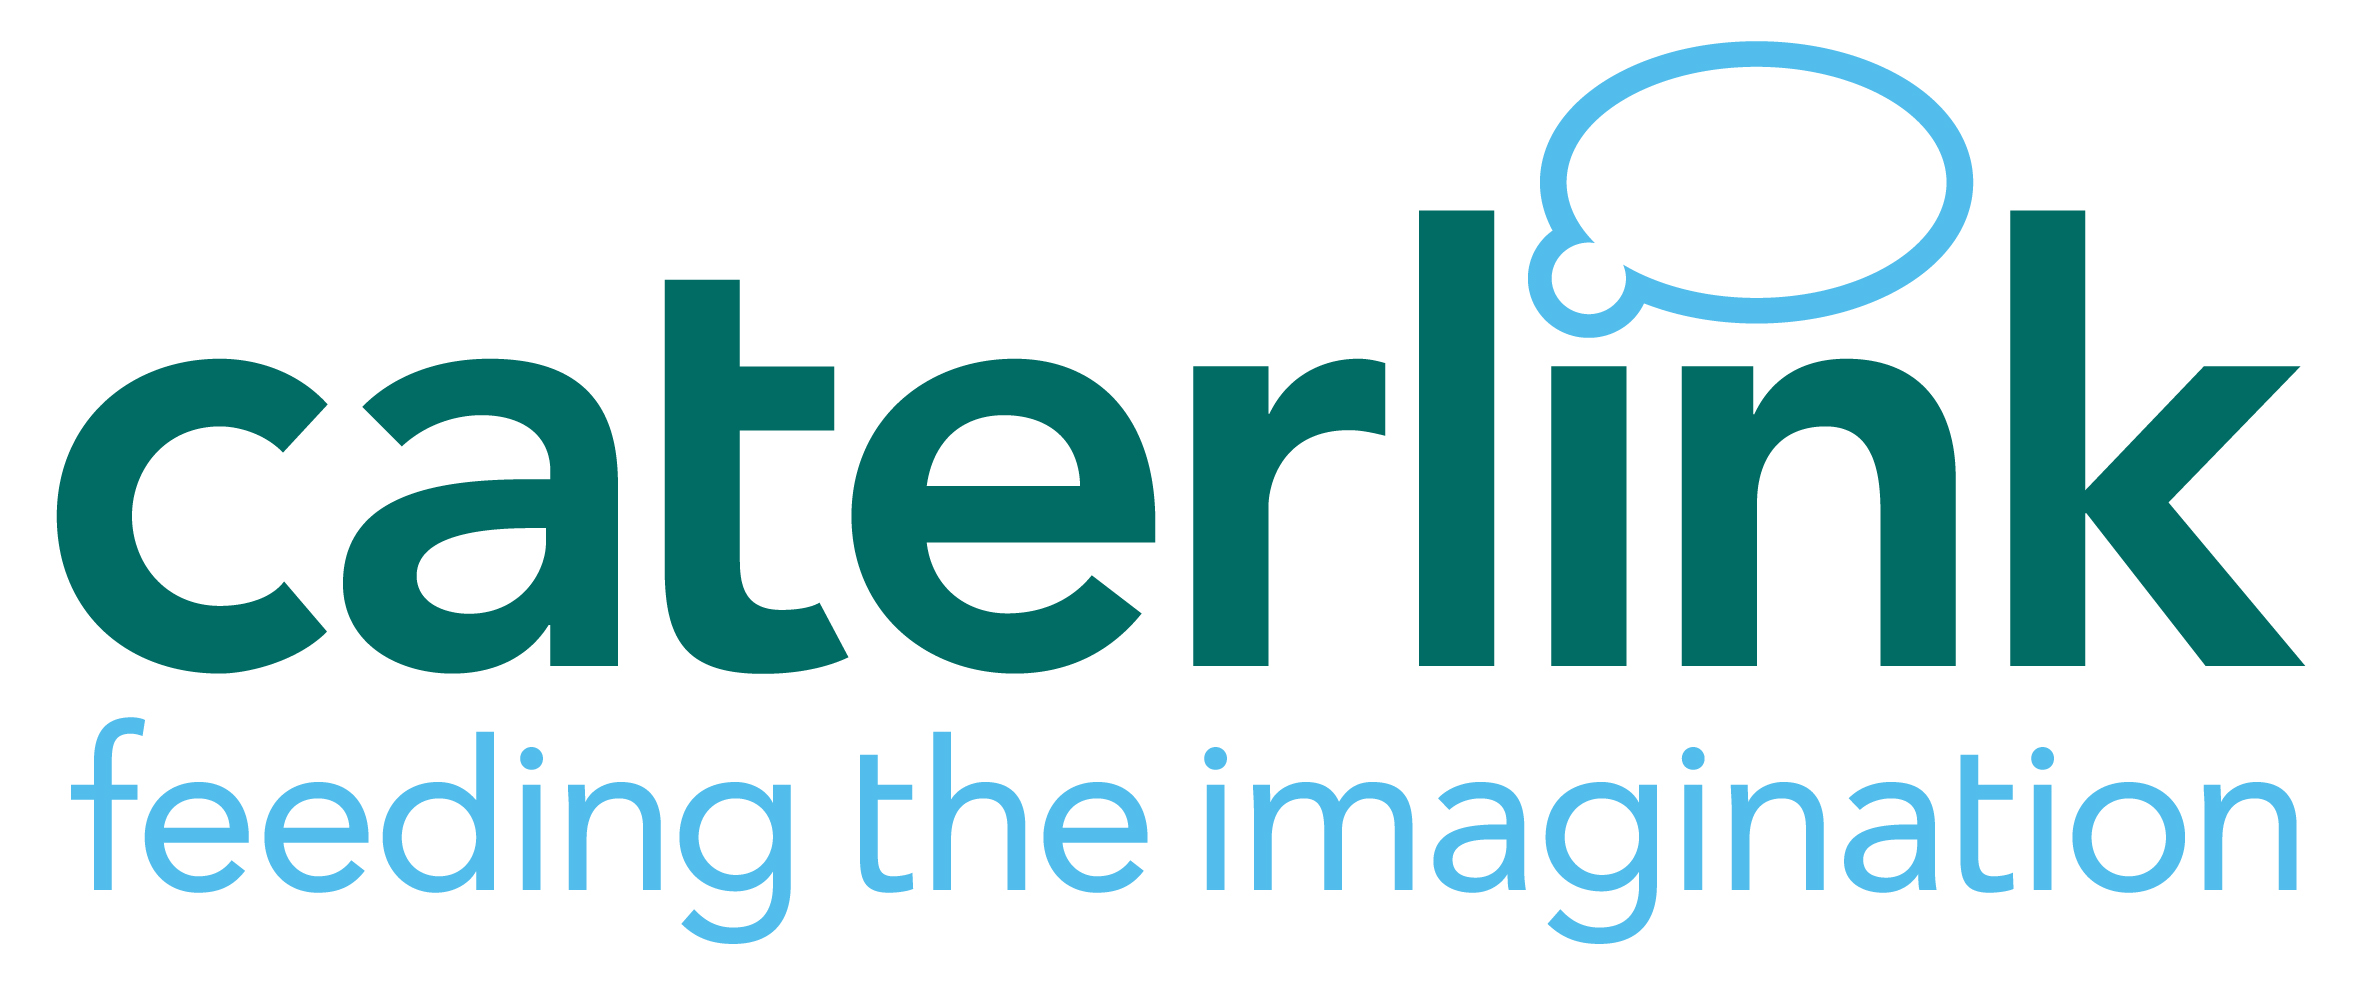 caterlink logo